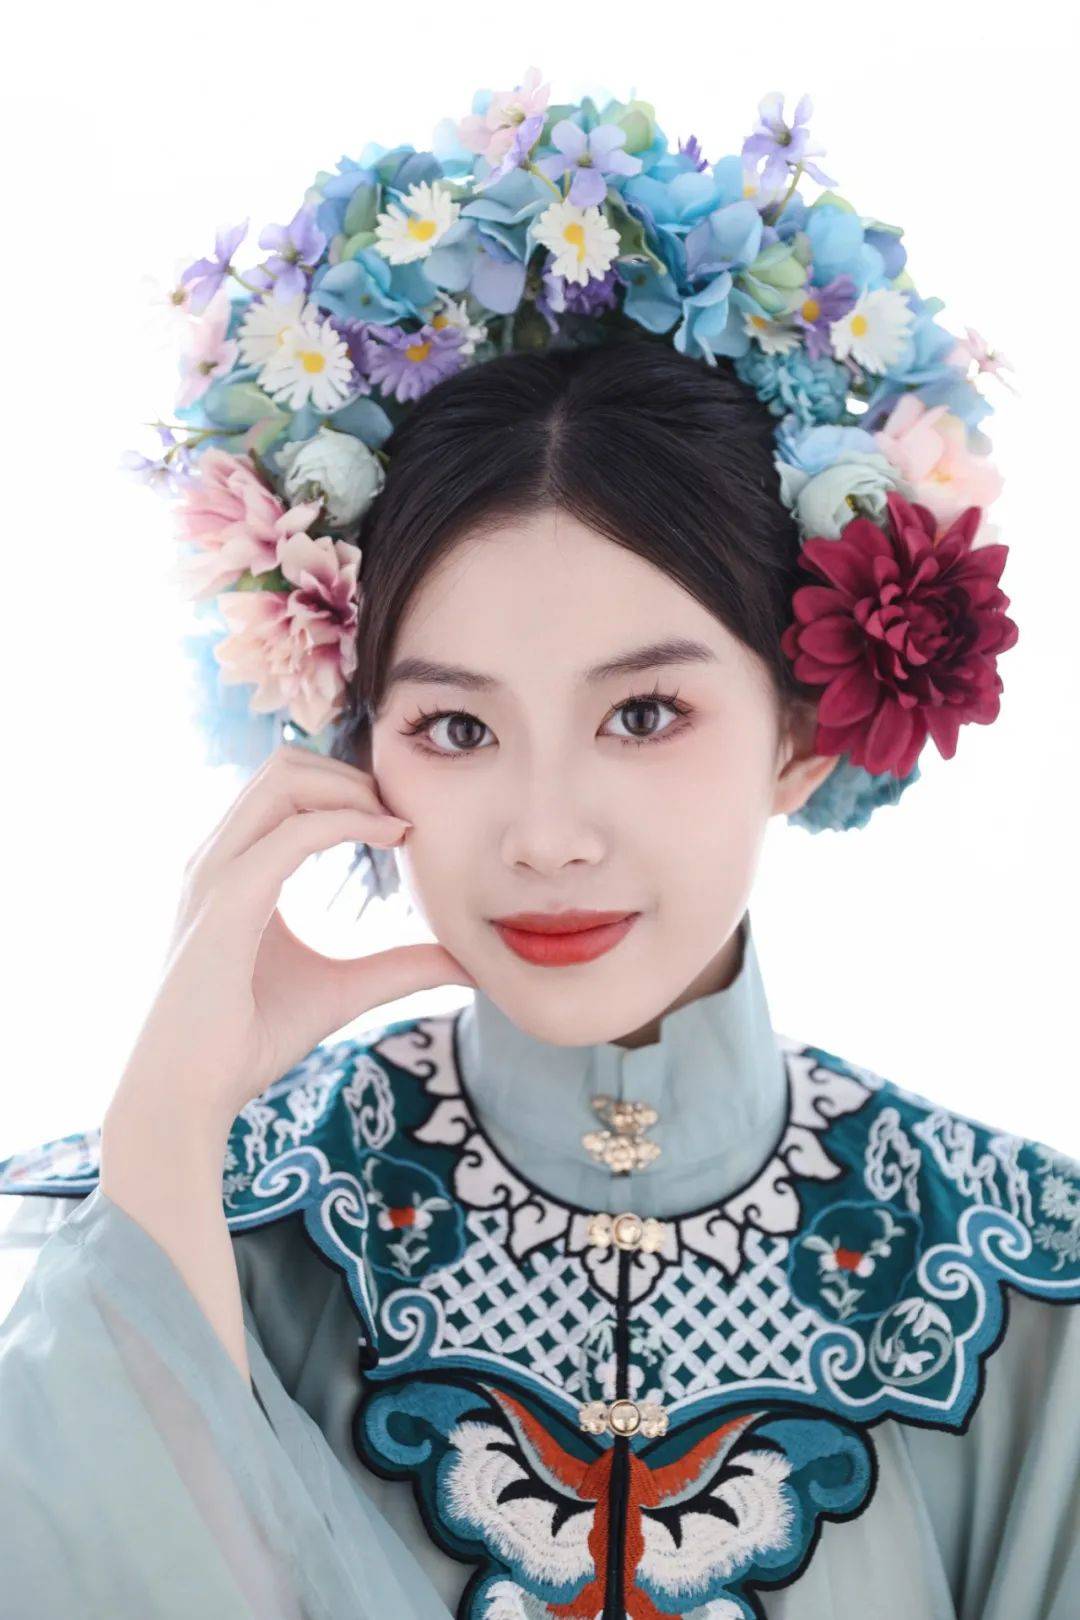 这些妆容彰显了汉服文化的独特魅力又展现了现代妆造的精湛技艺让摄影